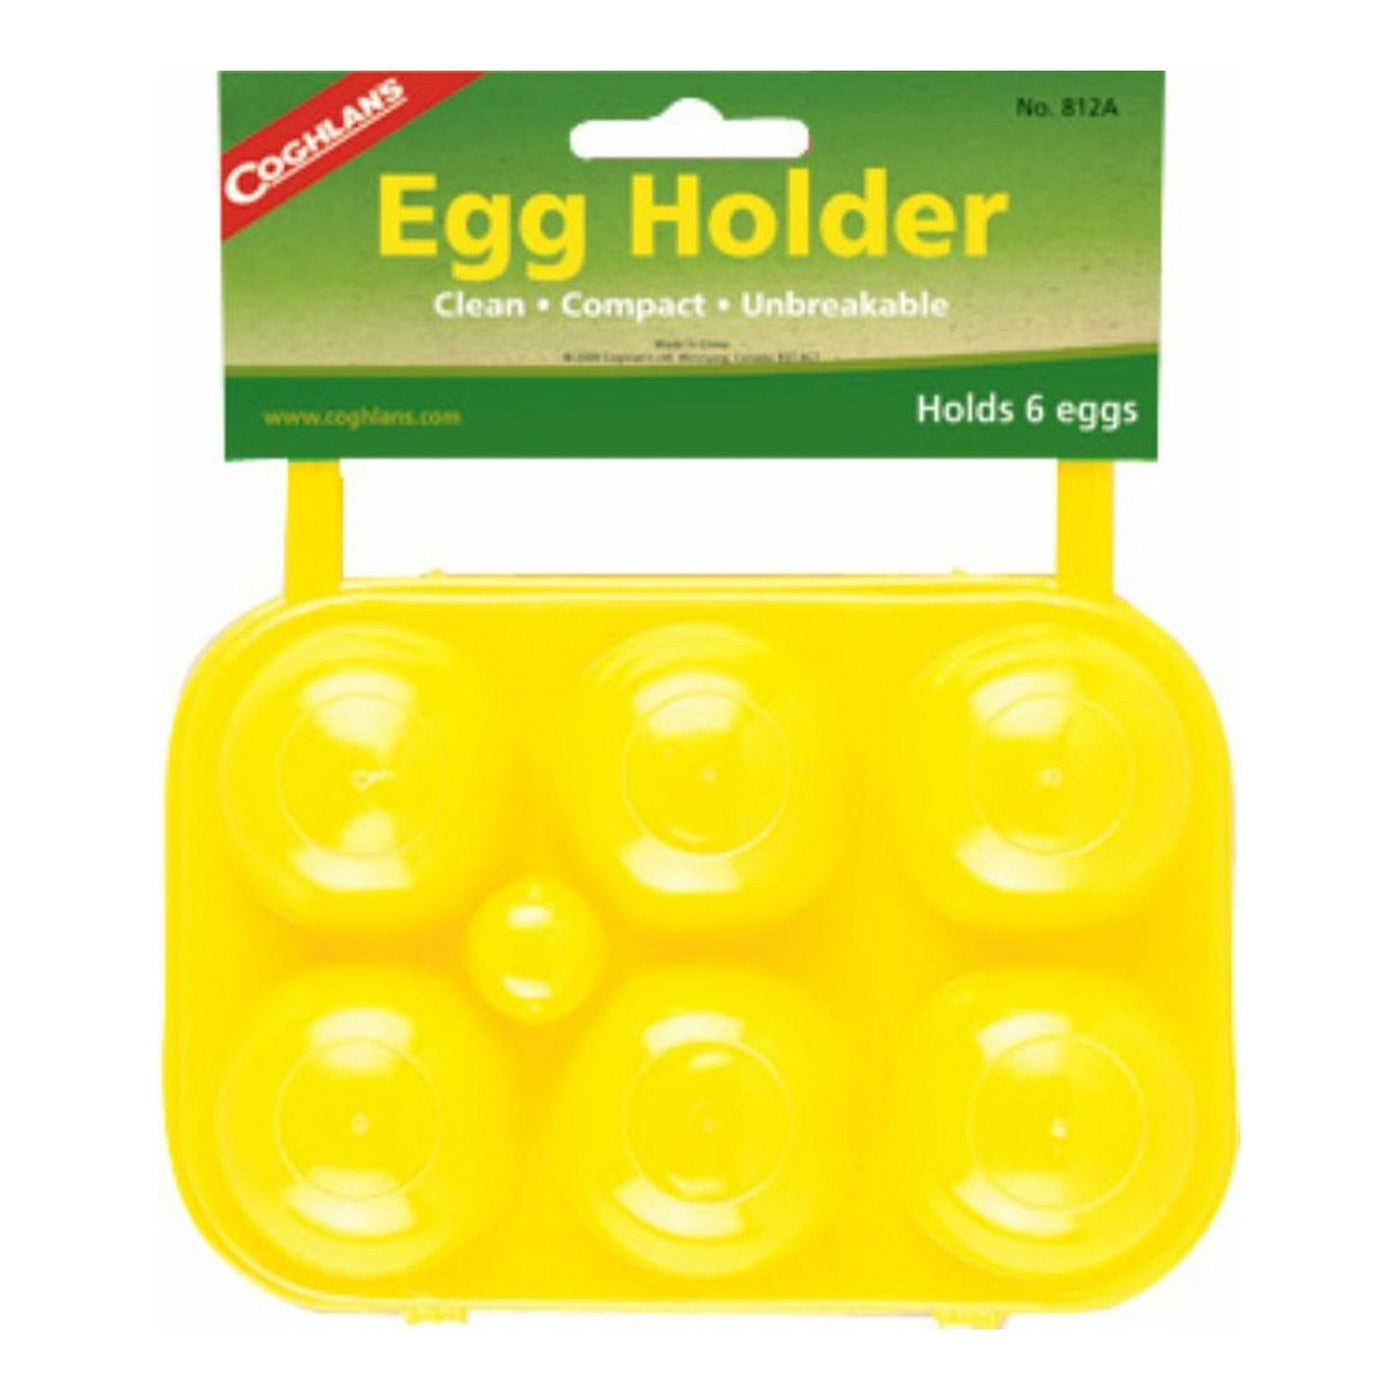 Egg Holder (6 eggs)